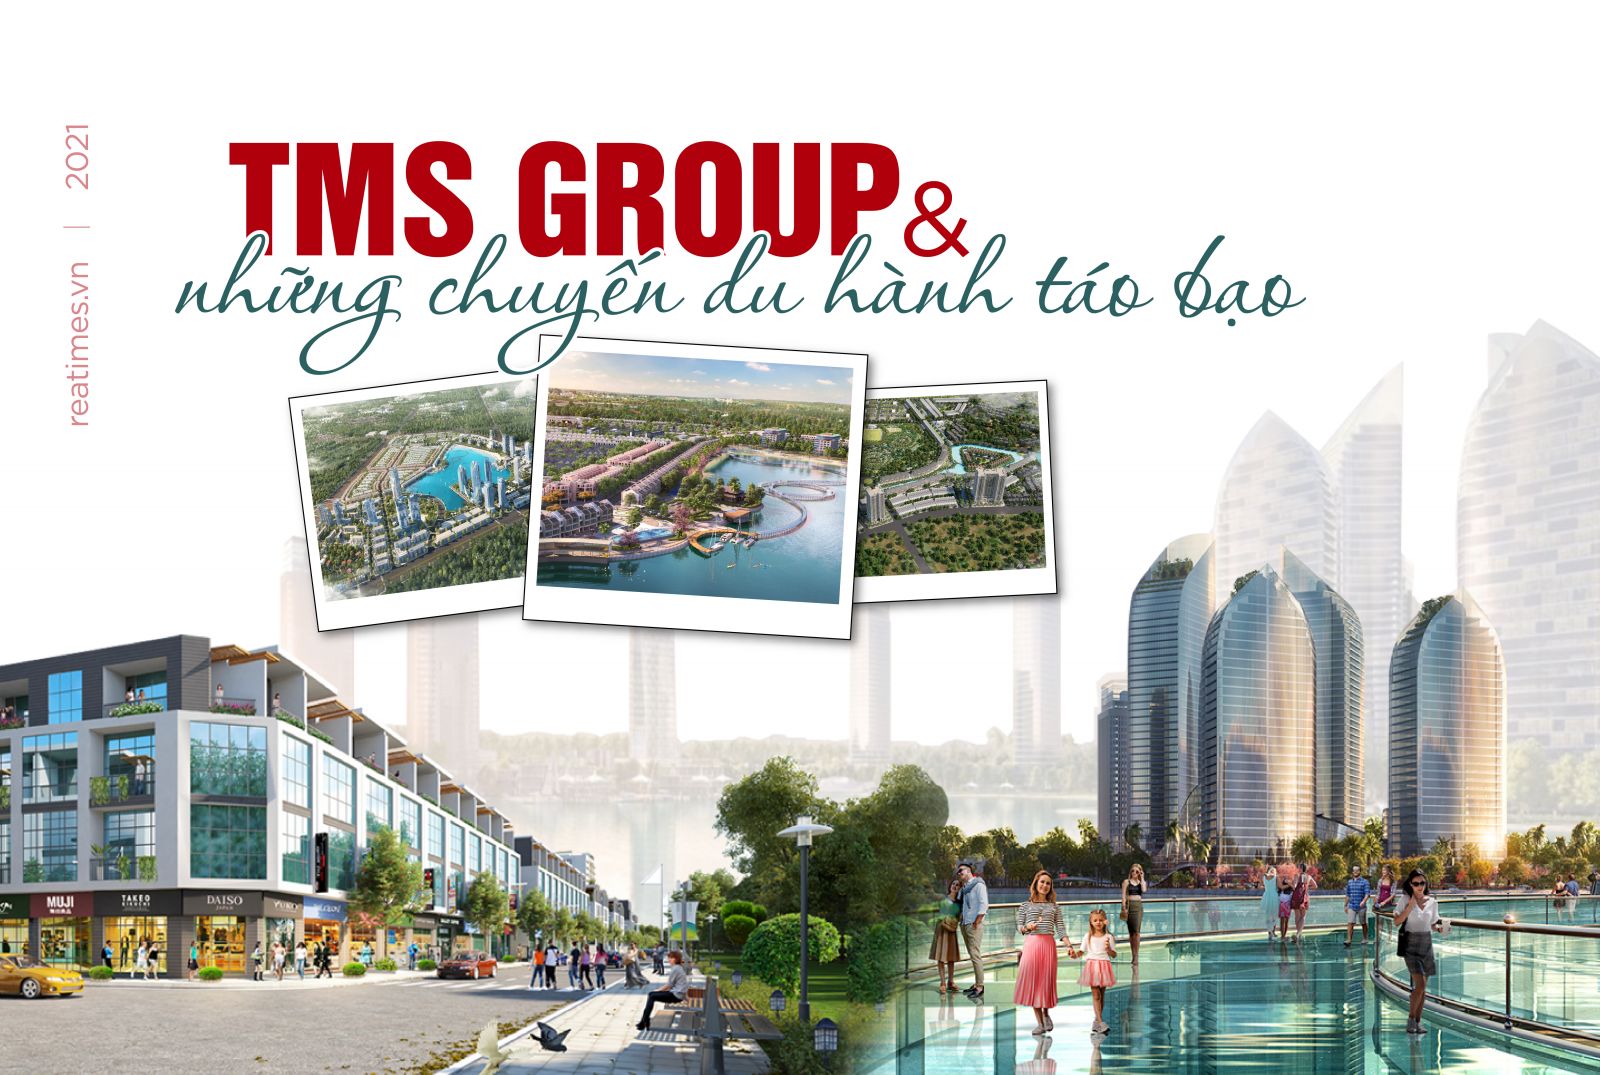 TMS Group và những chuyến du hành táo bạo